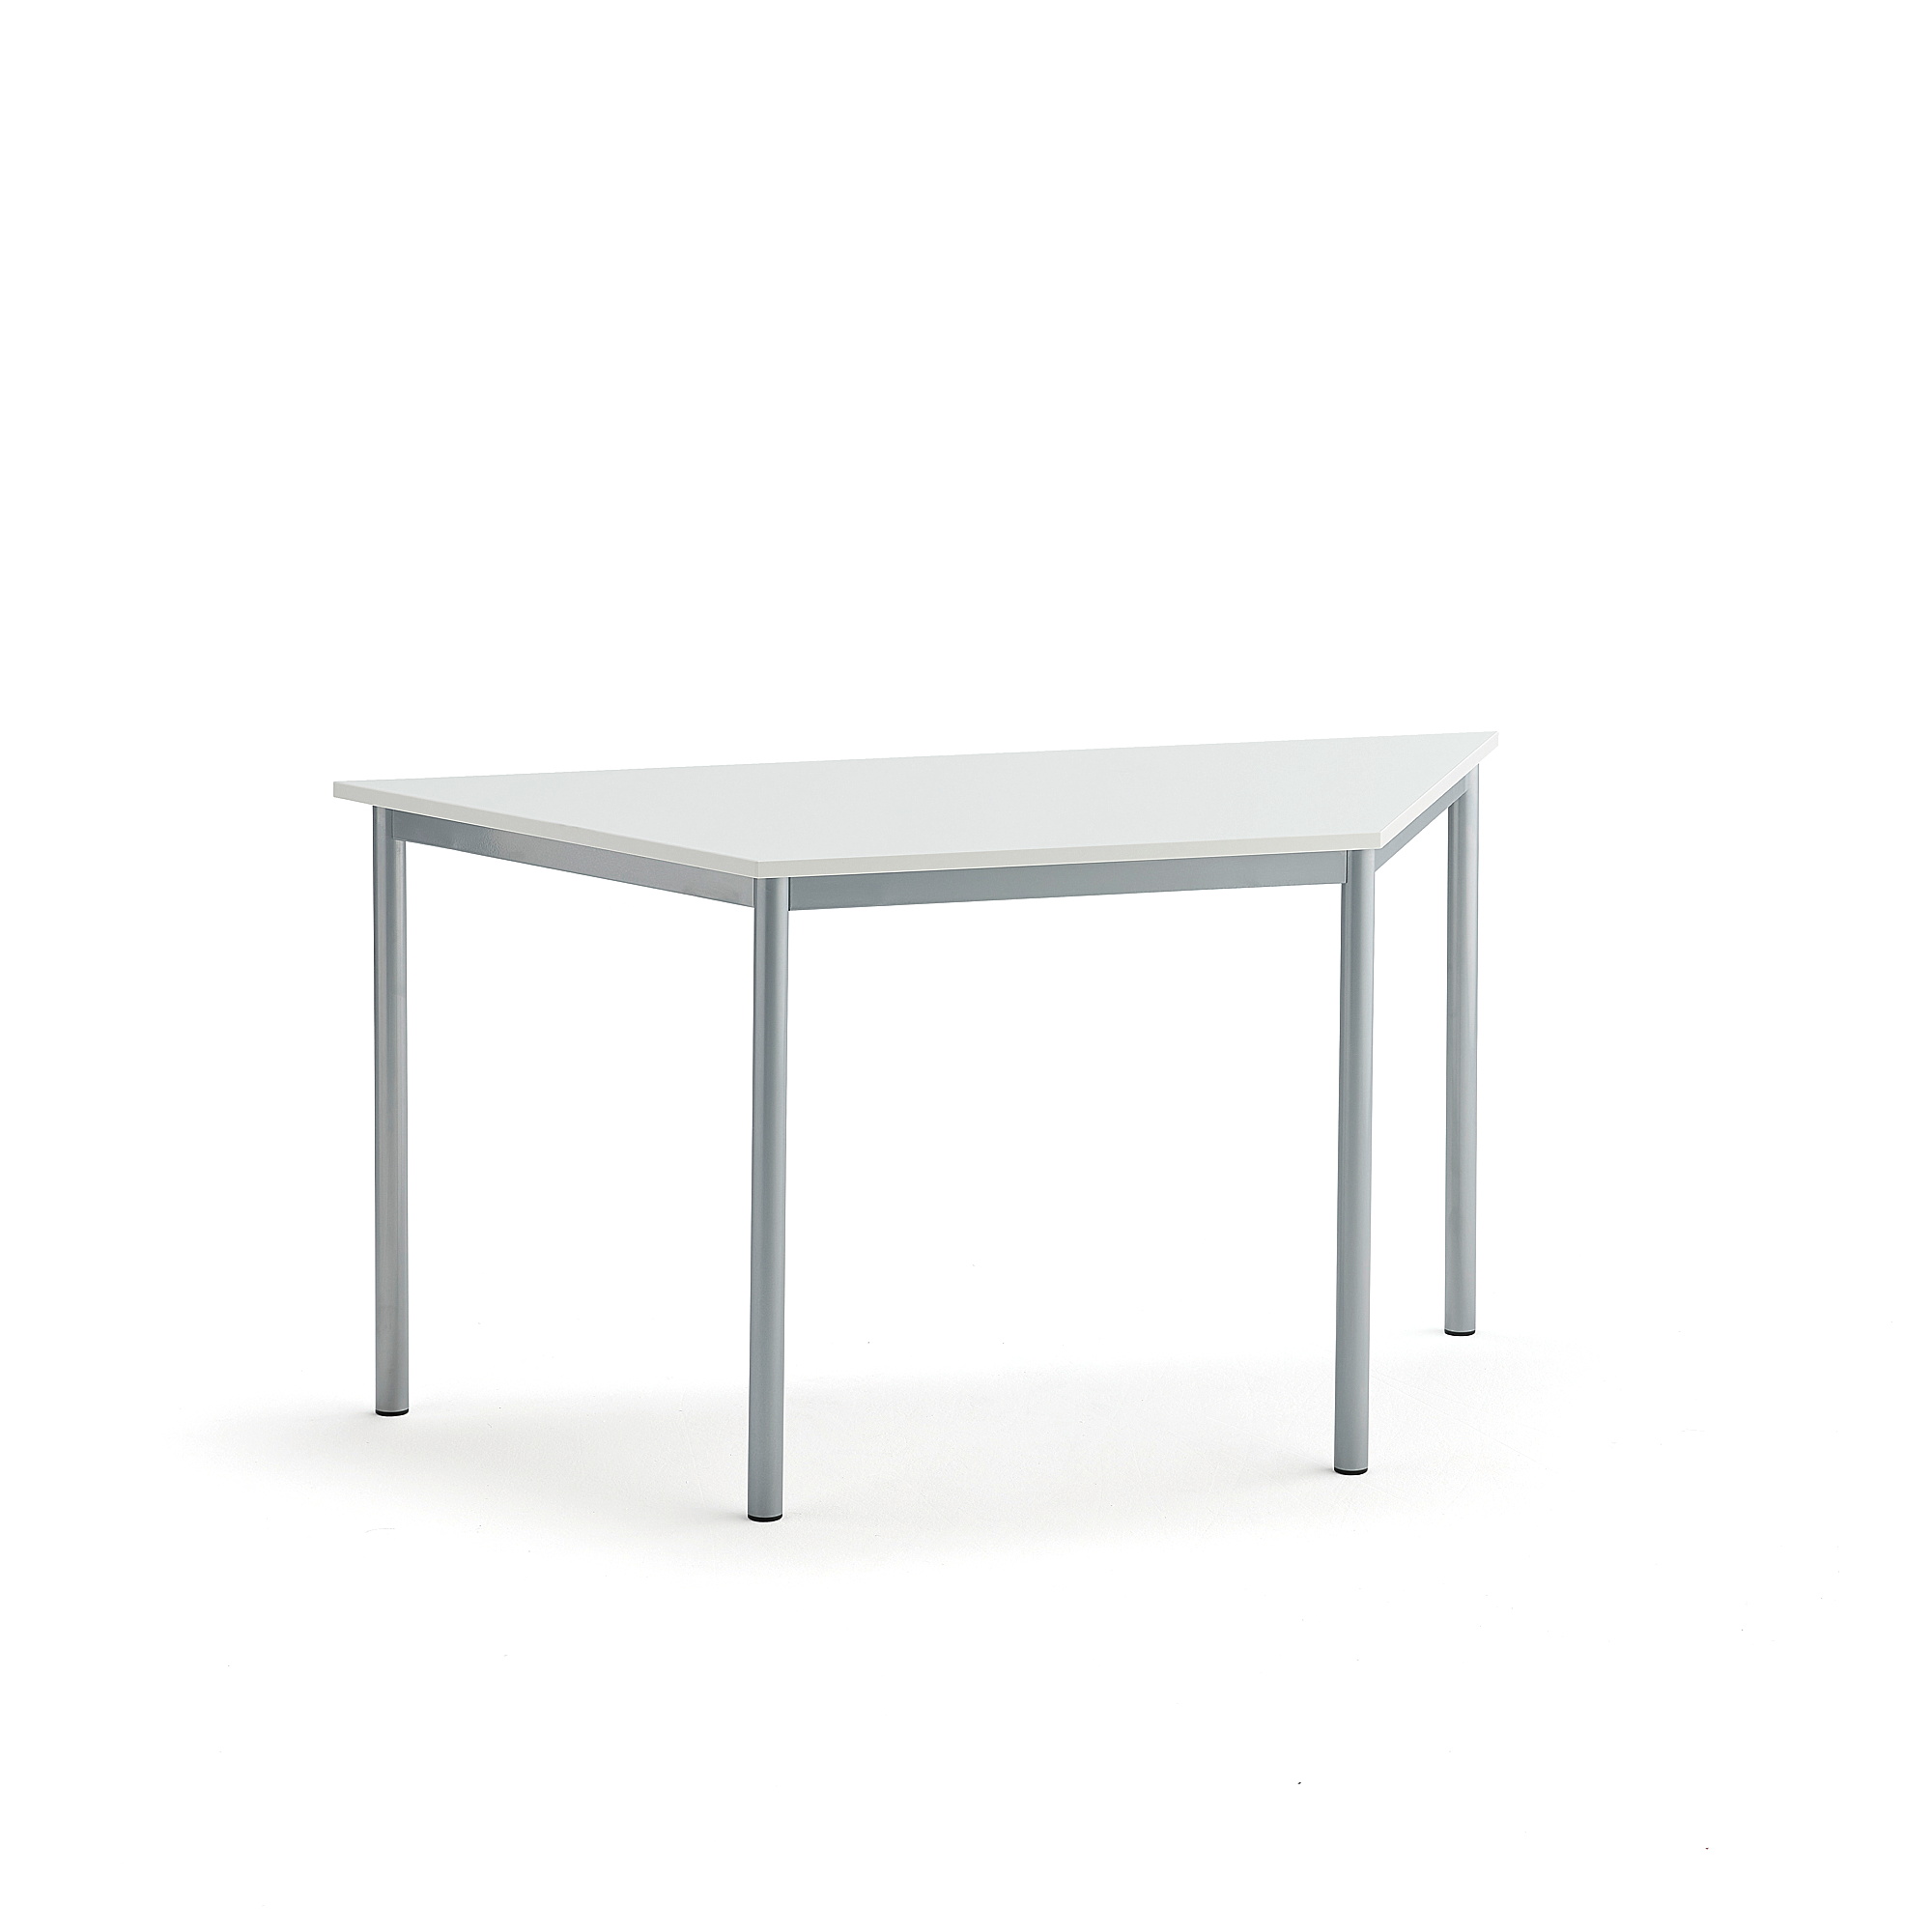 Stůl SONITUS TRAPETS, 1400x700x720 mm, stříbrné nohy, HPL deska tlumící hluk, bílá